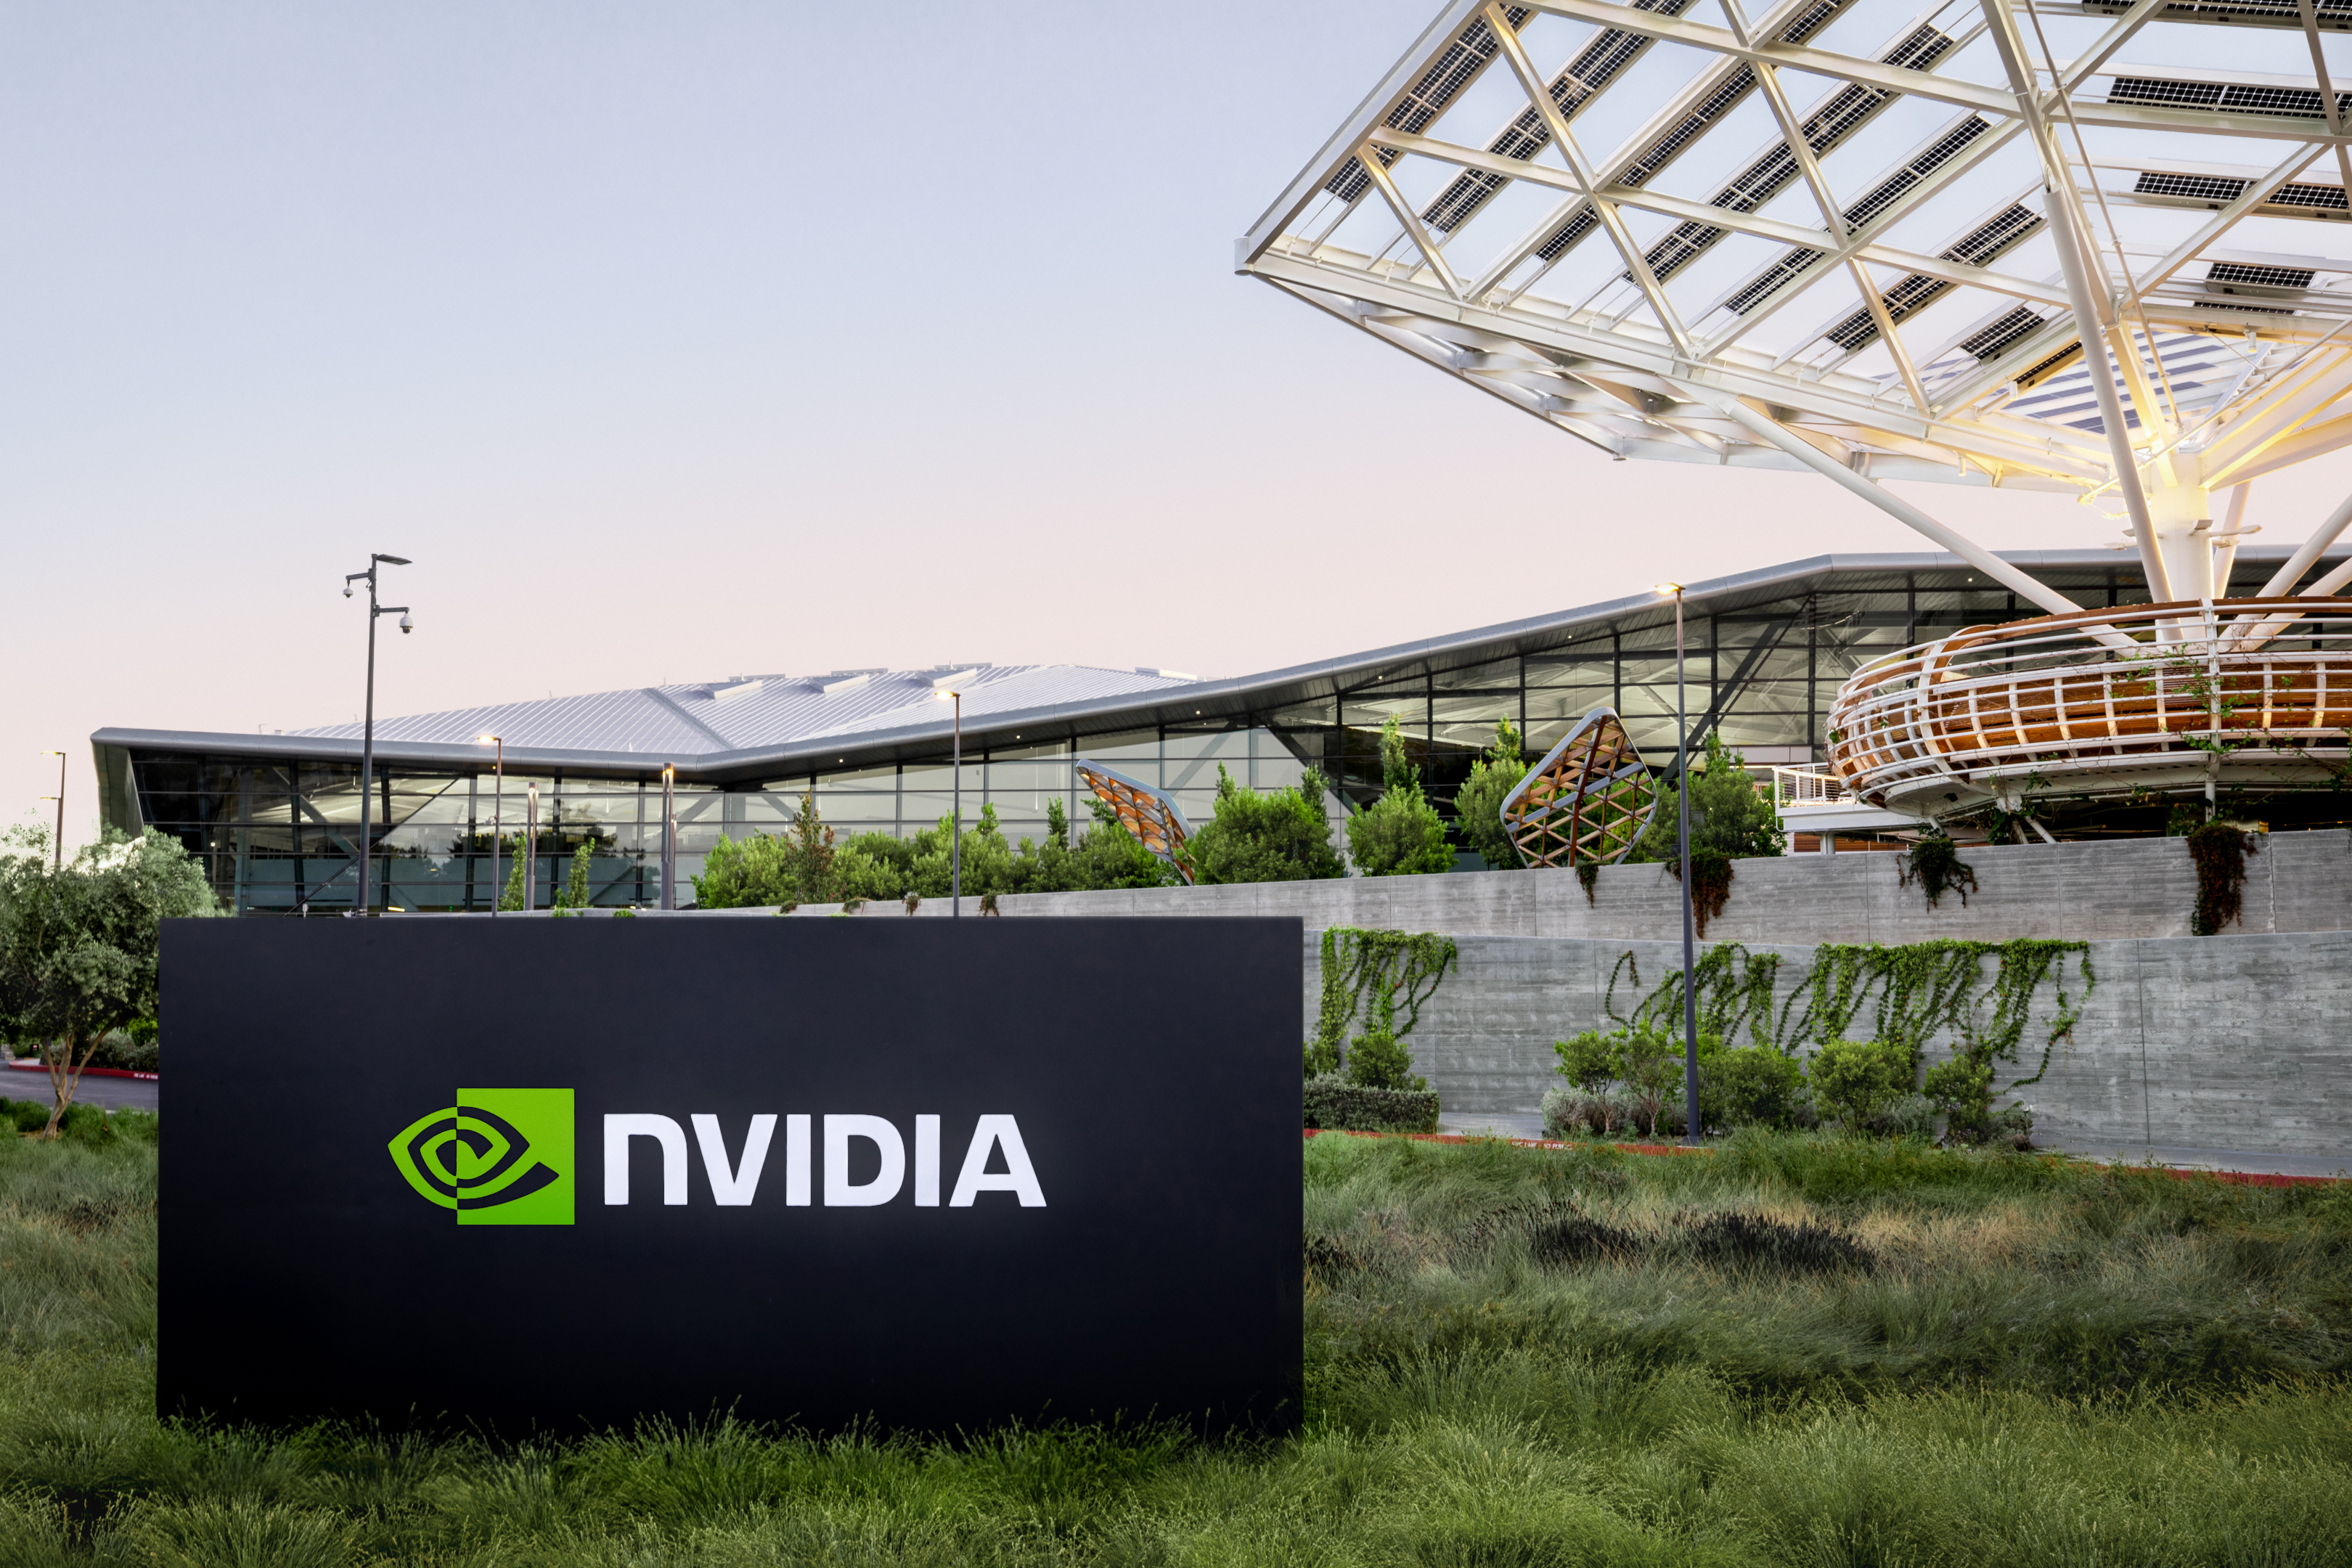 NVIDIA's marktwaarde overschrijdt voor het eerst $ 2 biljoen te midden van AI-hype